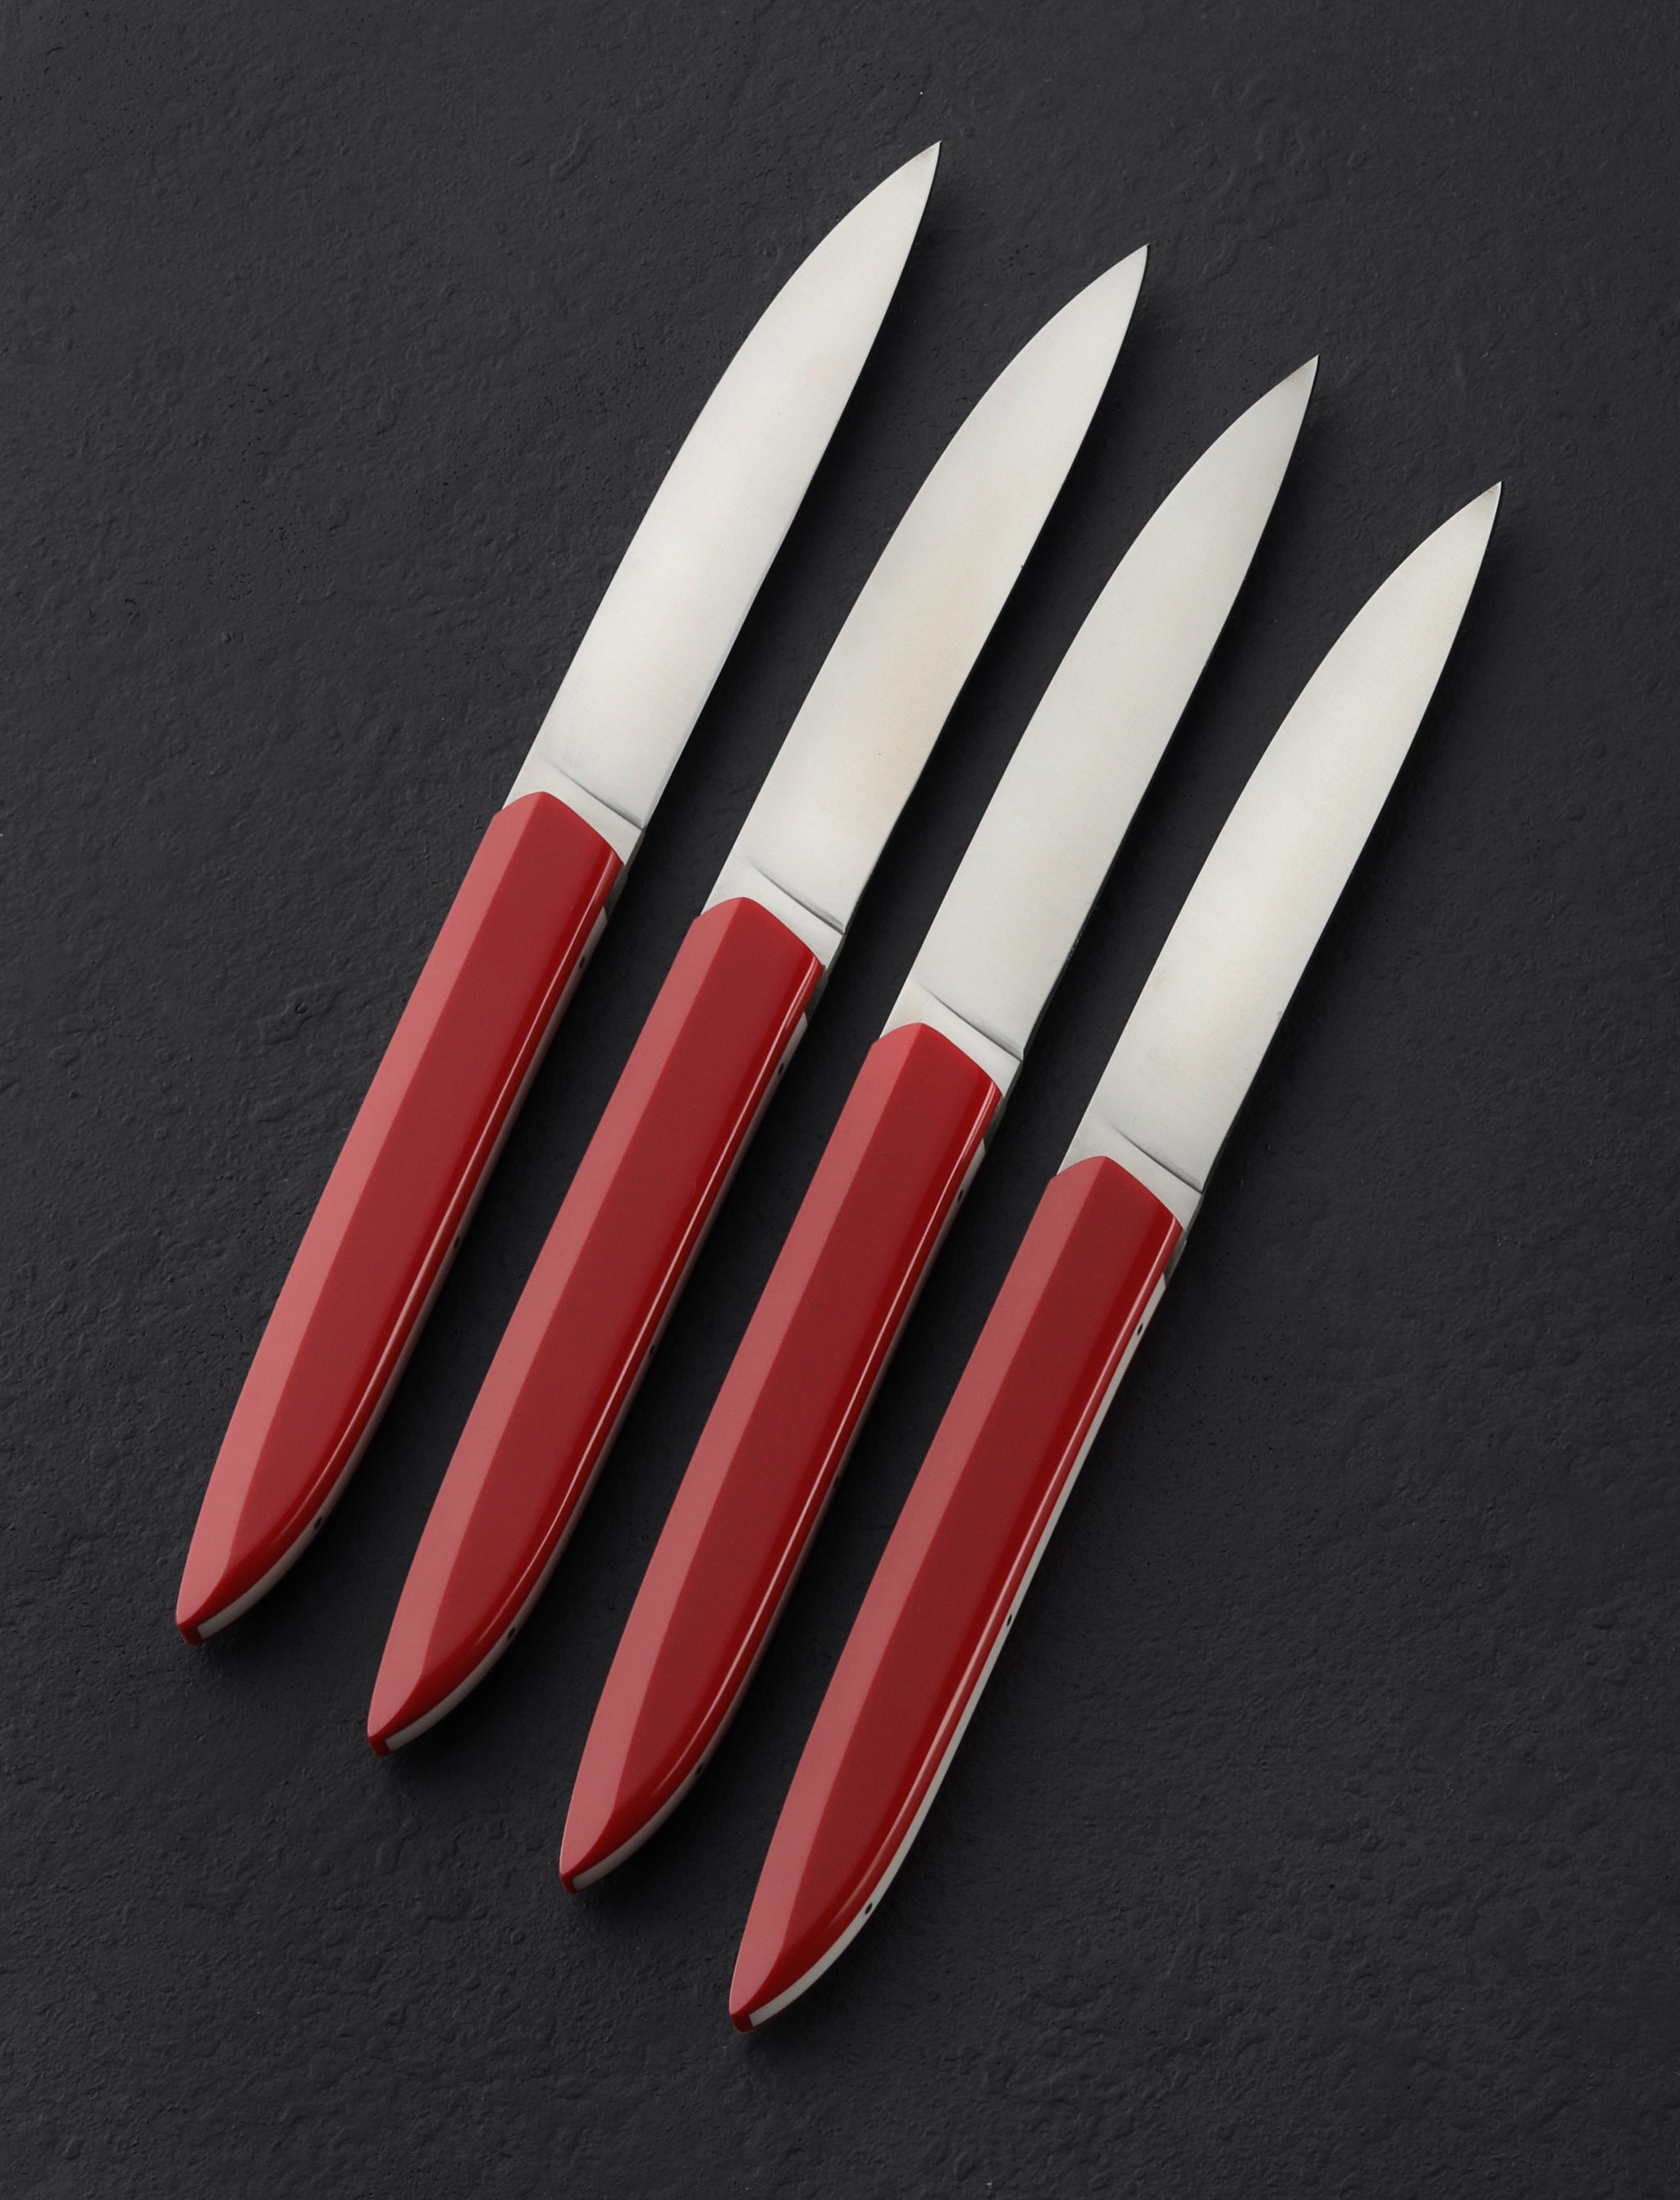 Stainless Steel Steak Knives